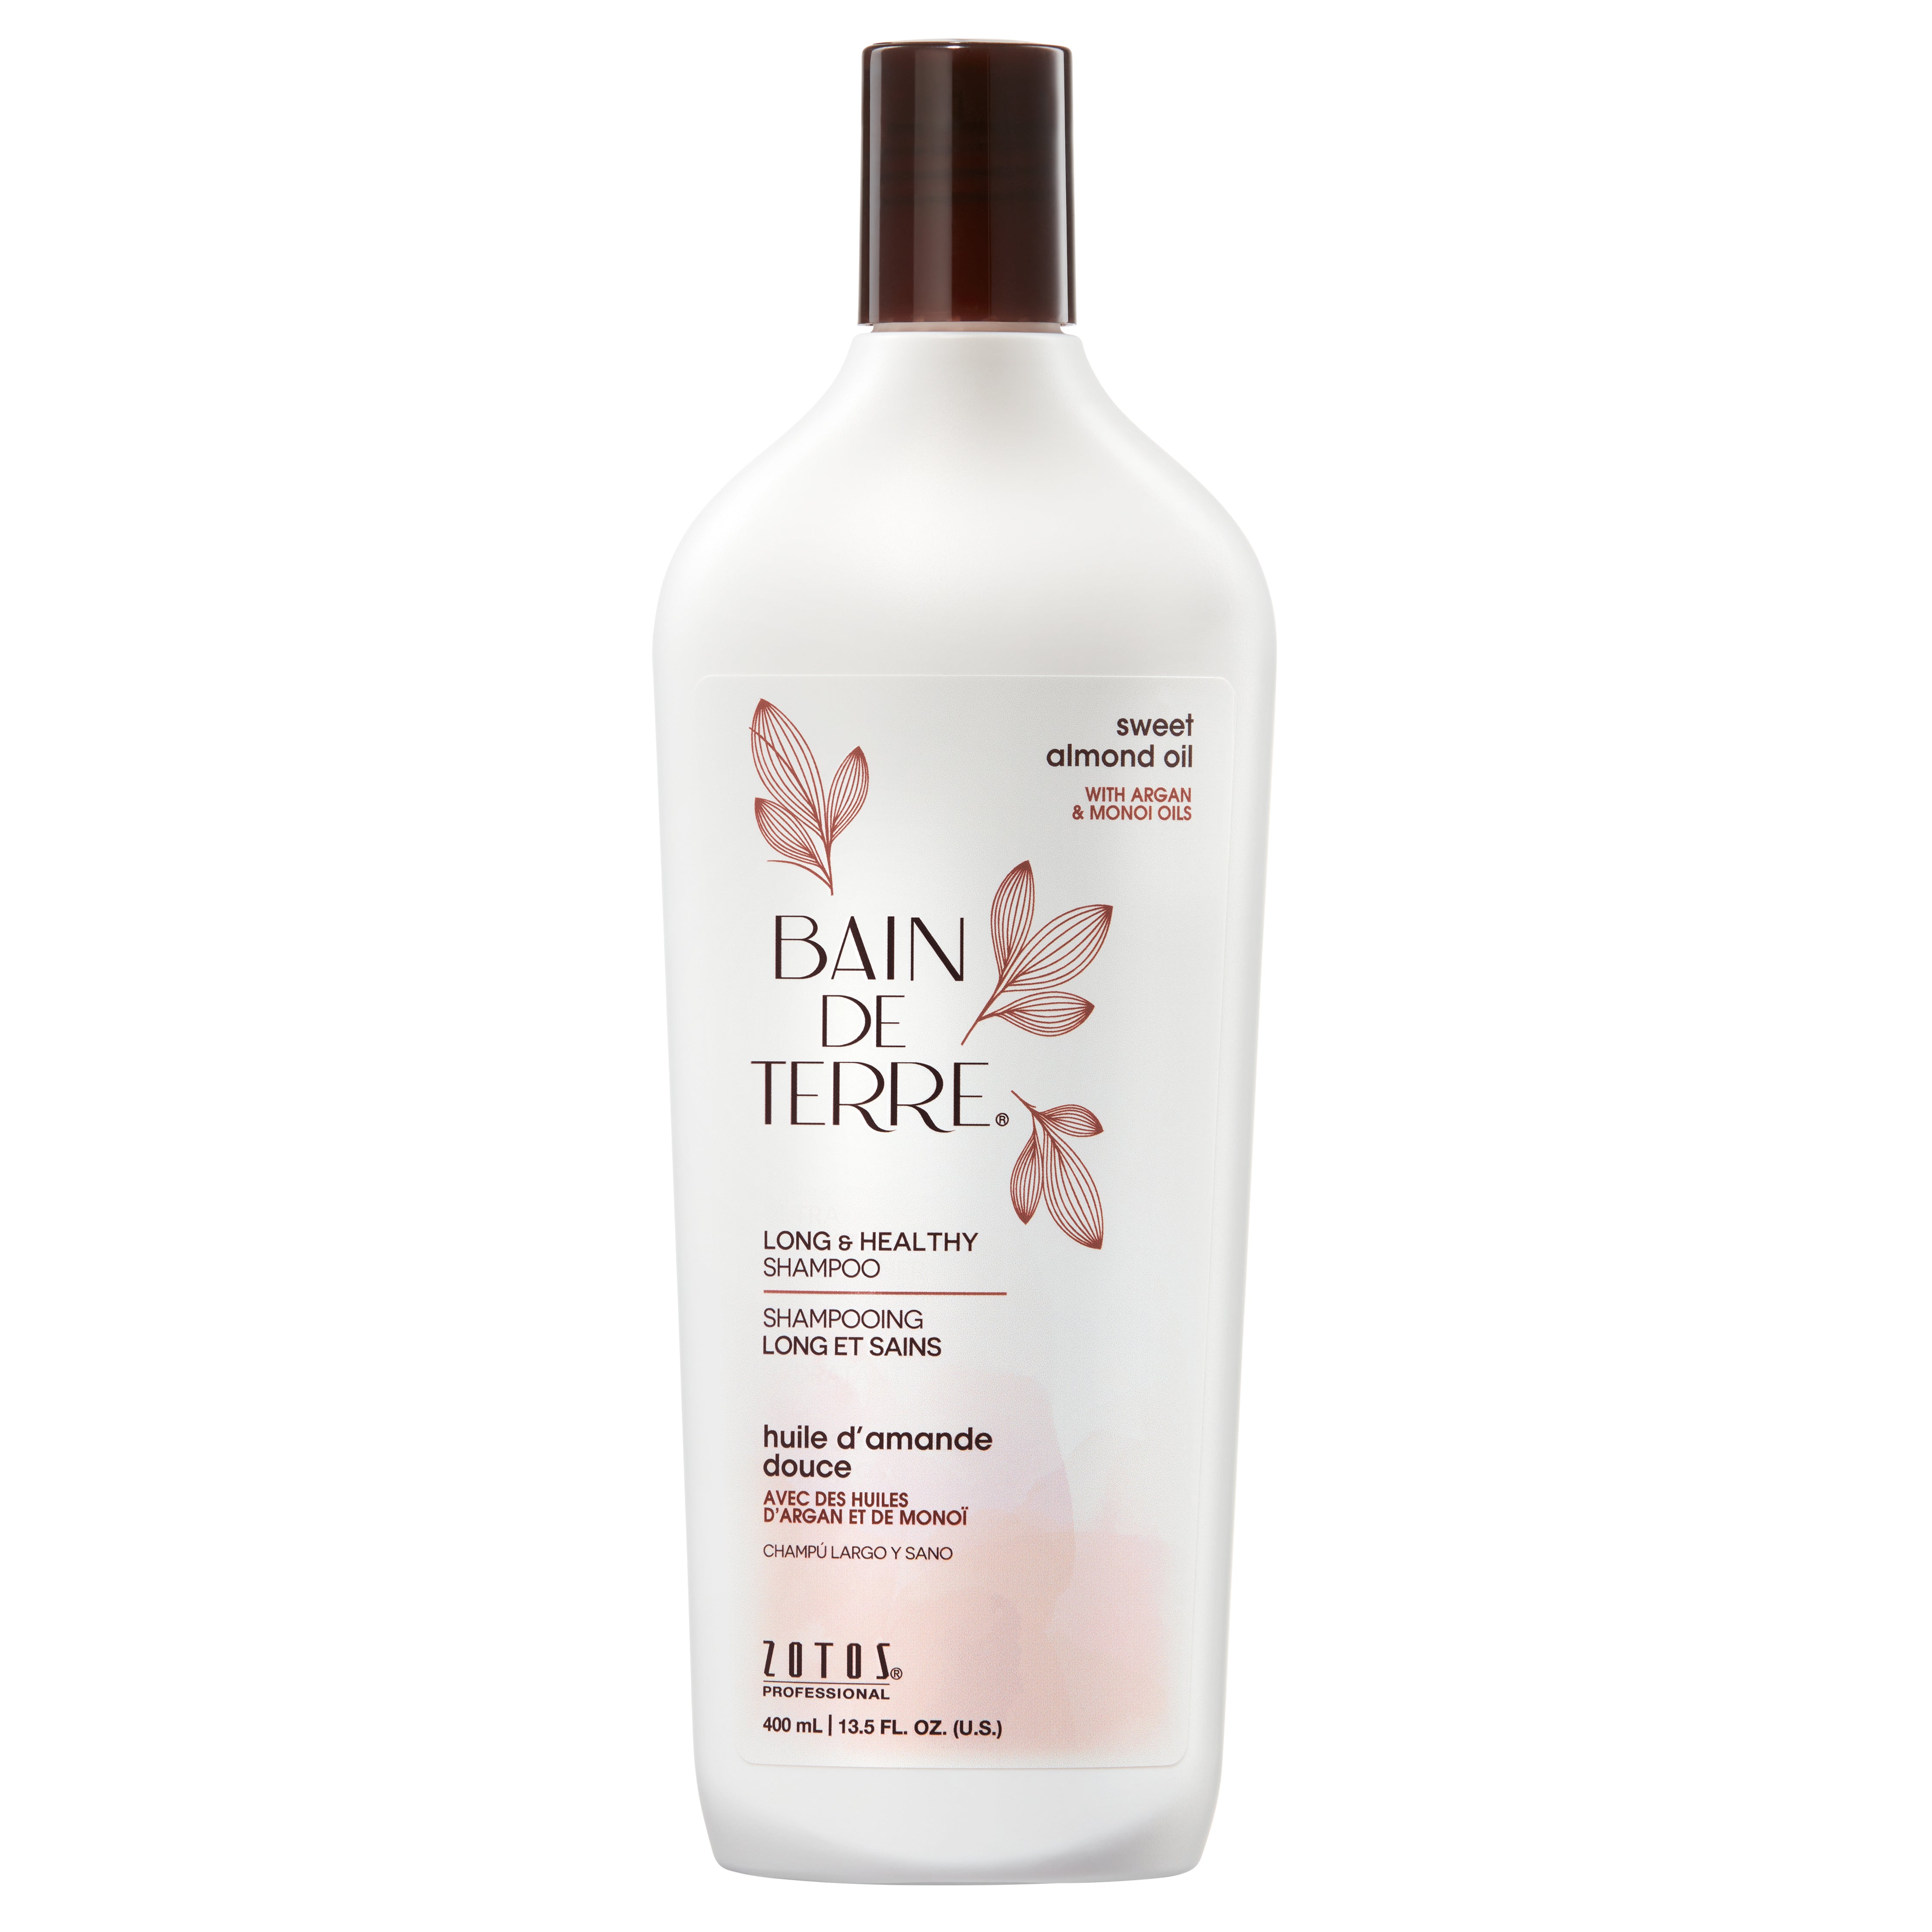 Bain de Terre® Long & Healthy Shampoo, Sweet Almond Oil